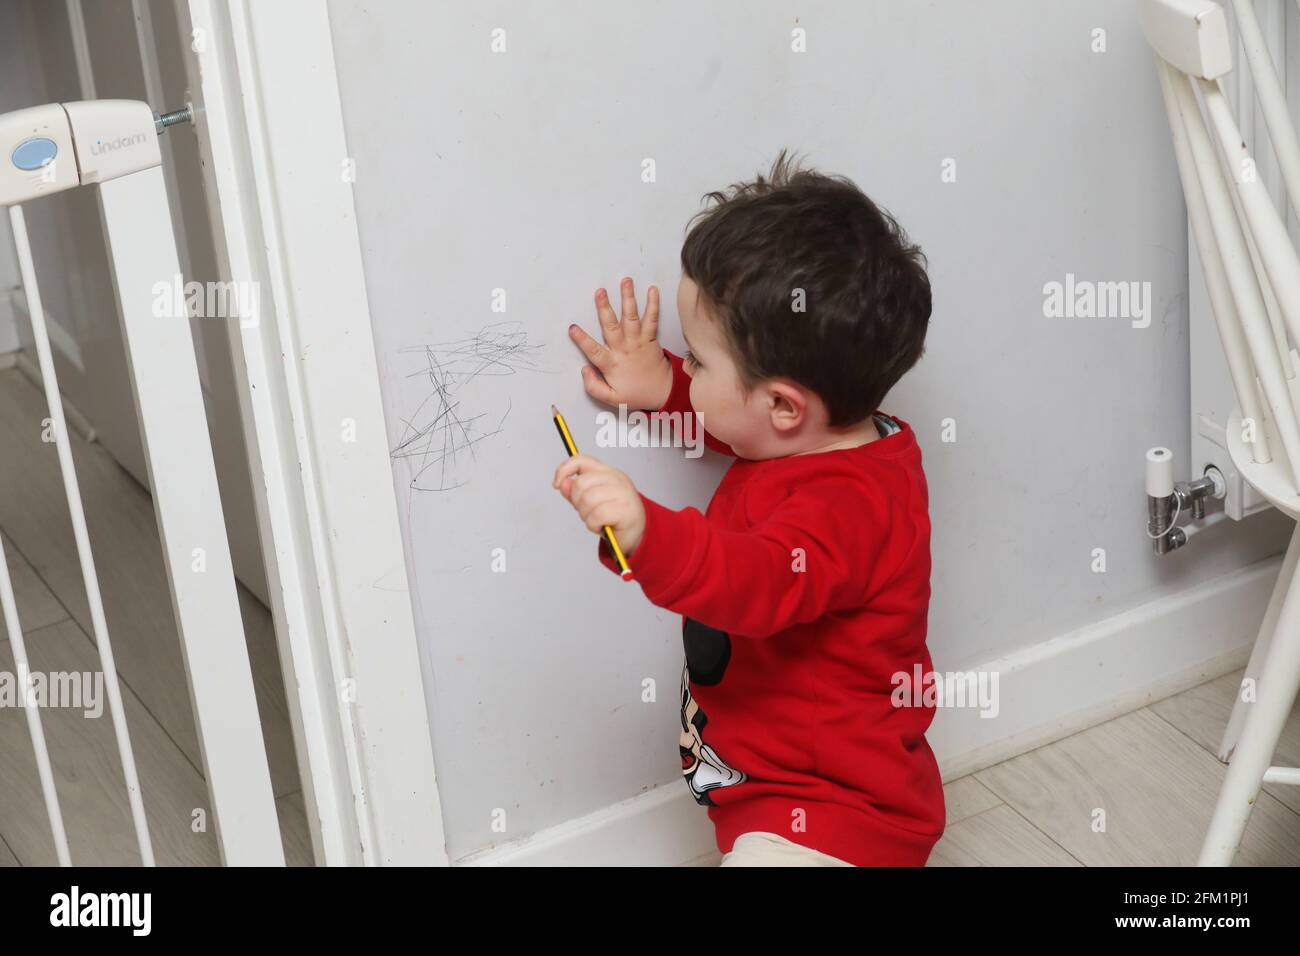 Ein kleiner Junge hat in West Sussex, Großbritannien, mit einem Bleistift an den Wänden gezeichnet. Stockfoto